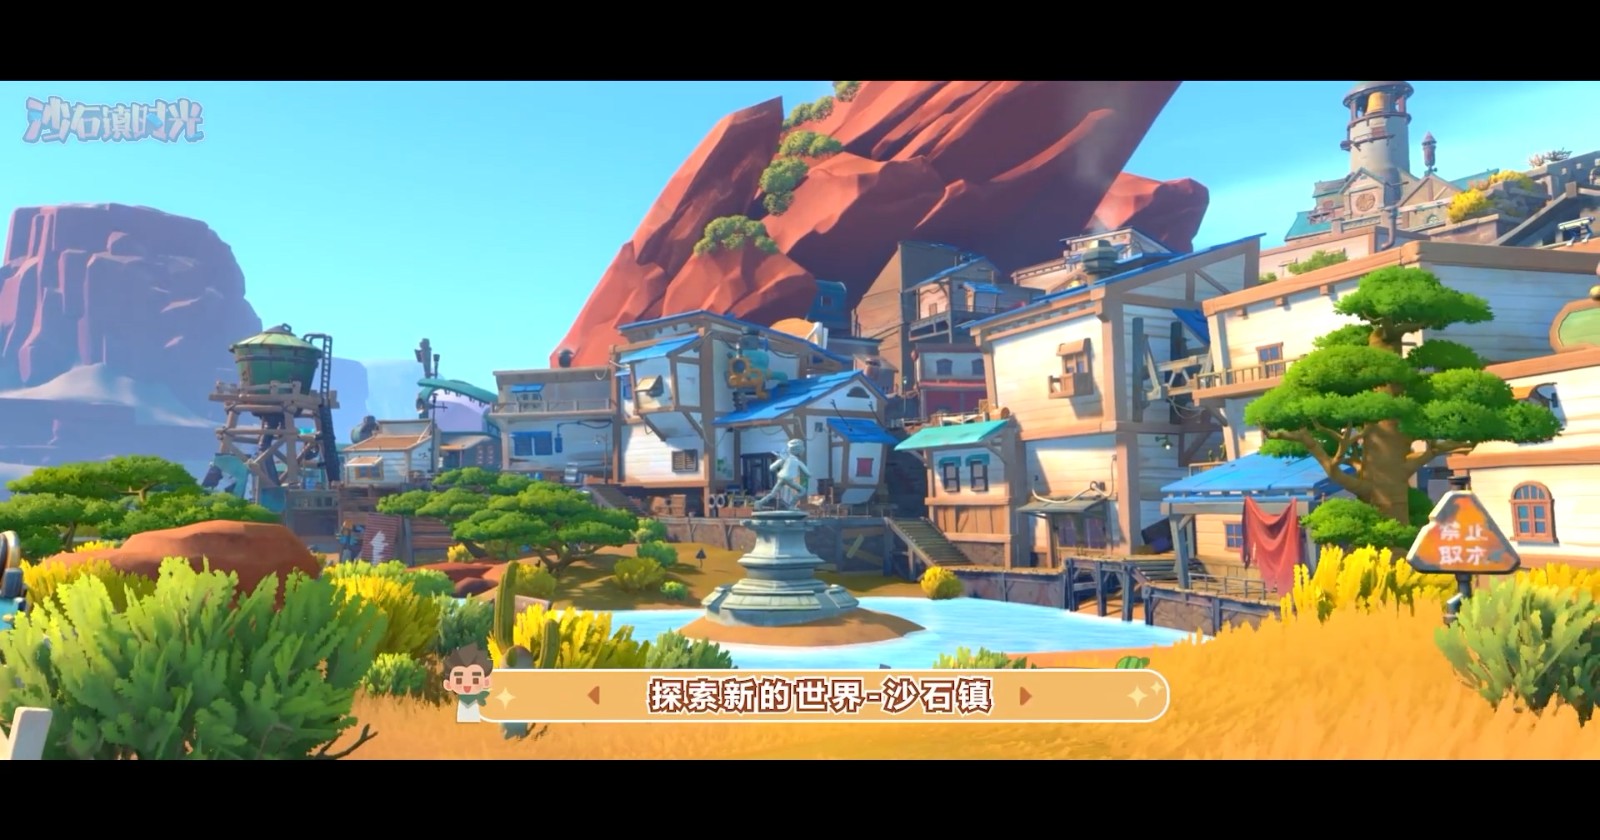 游戲之夜S4：《沙石鎮時光》將于明年1月登陸Wegame